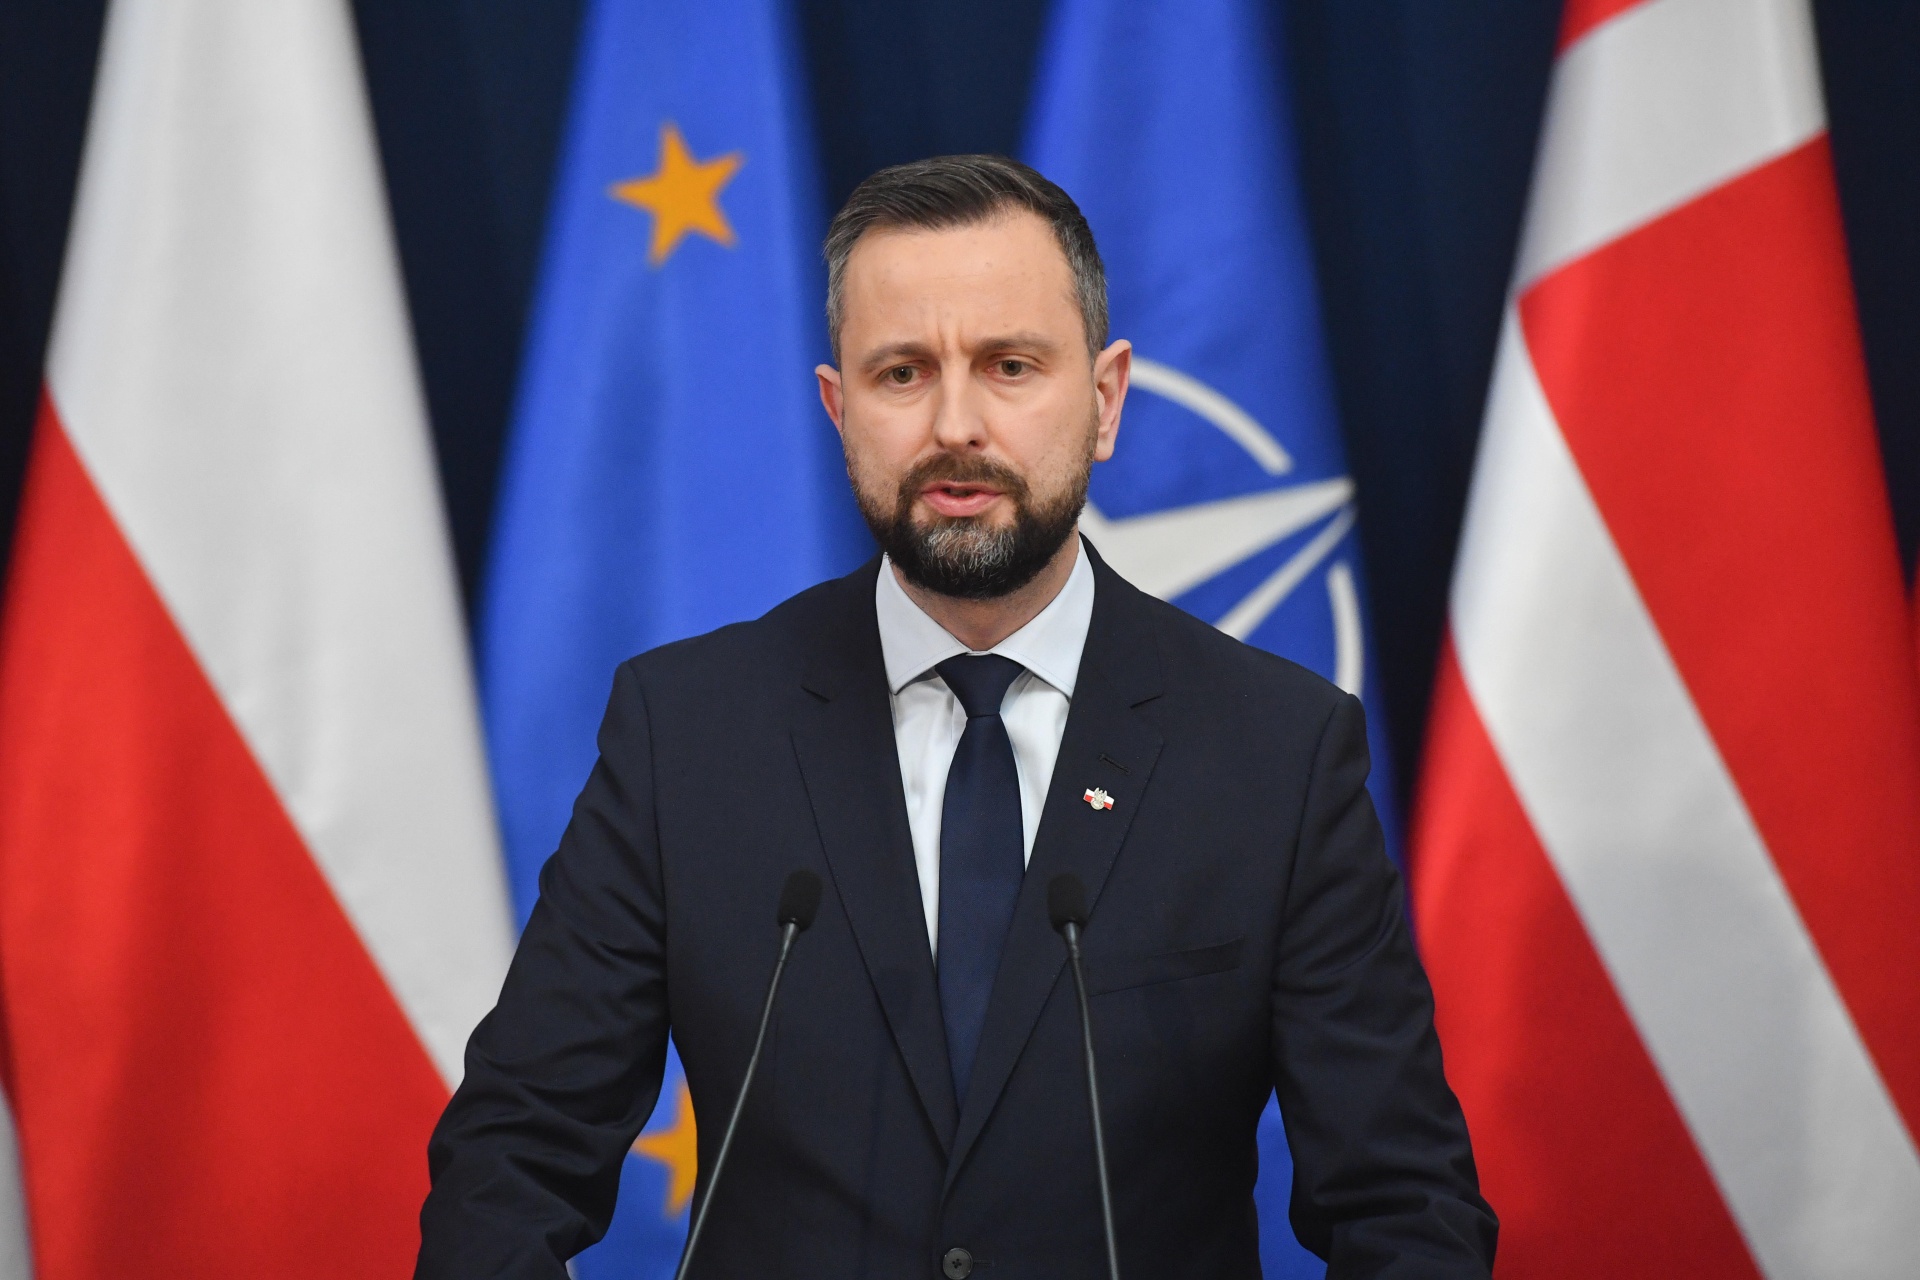 Władysław Kosiniak-Kamysz na tle flagi Polski oraz sztandaru NATO